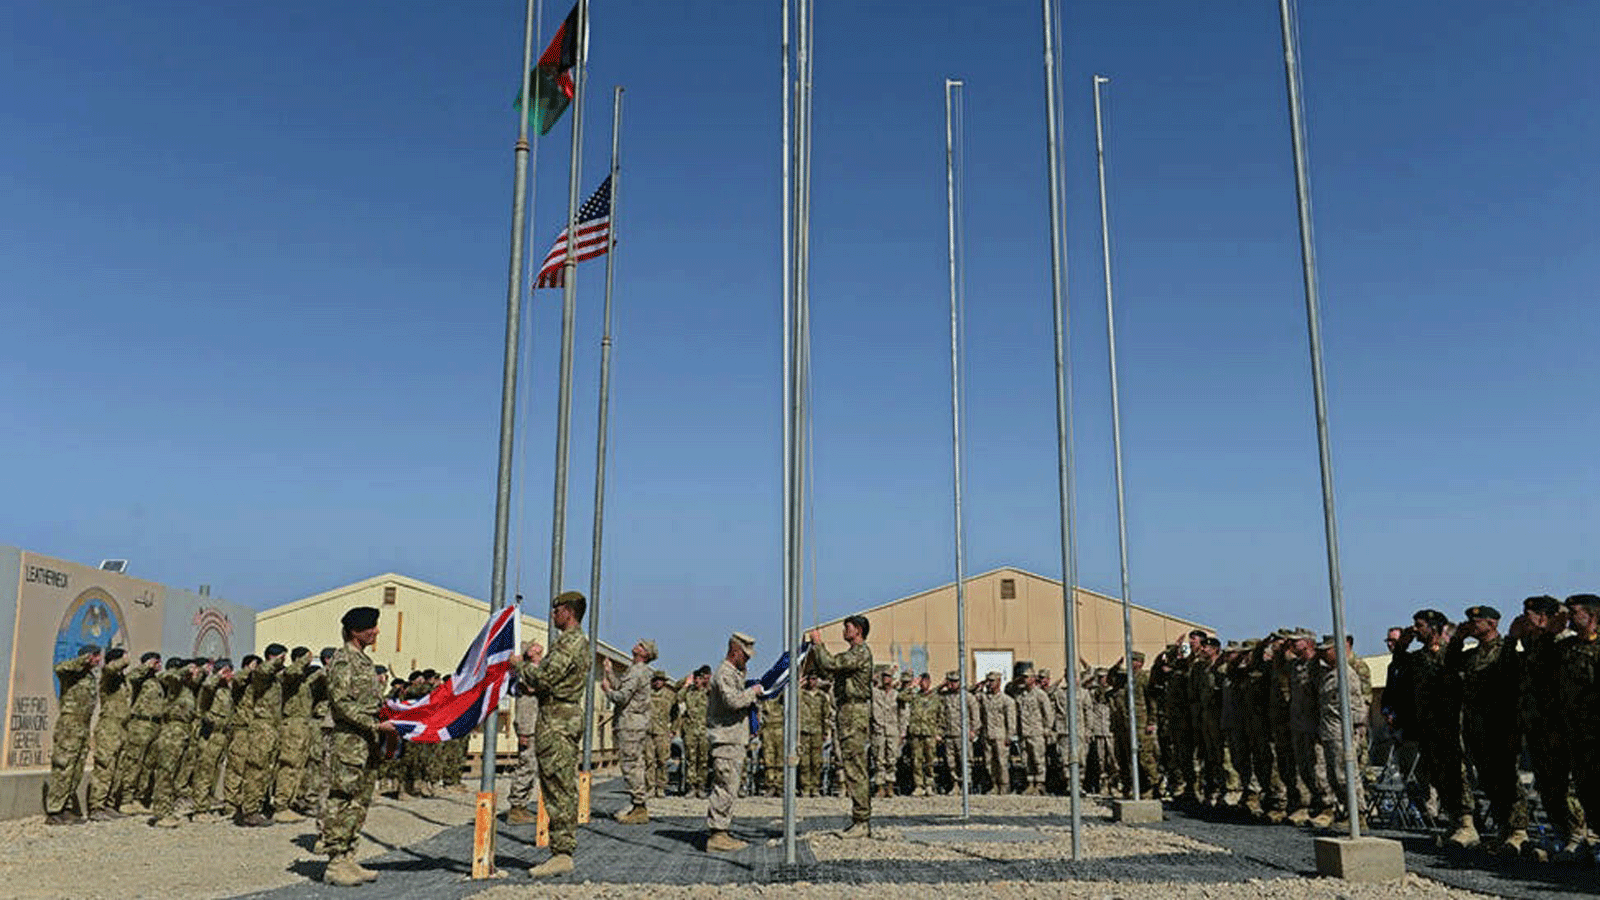 احتفال تسليم معسكر باستيون ومعسكر ليذرنيك في ولاية هلمند بأفغانستان